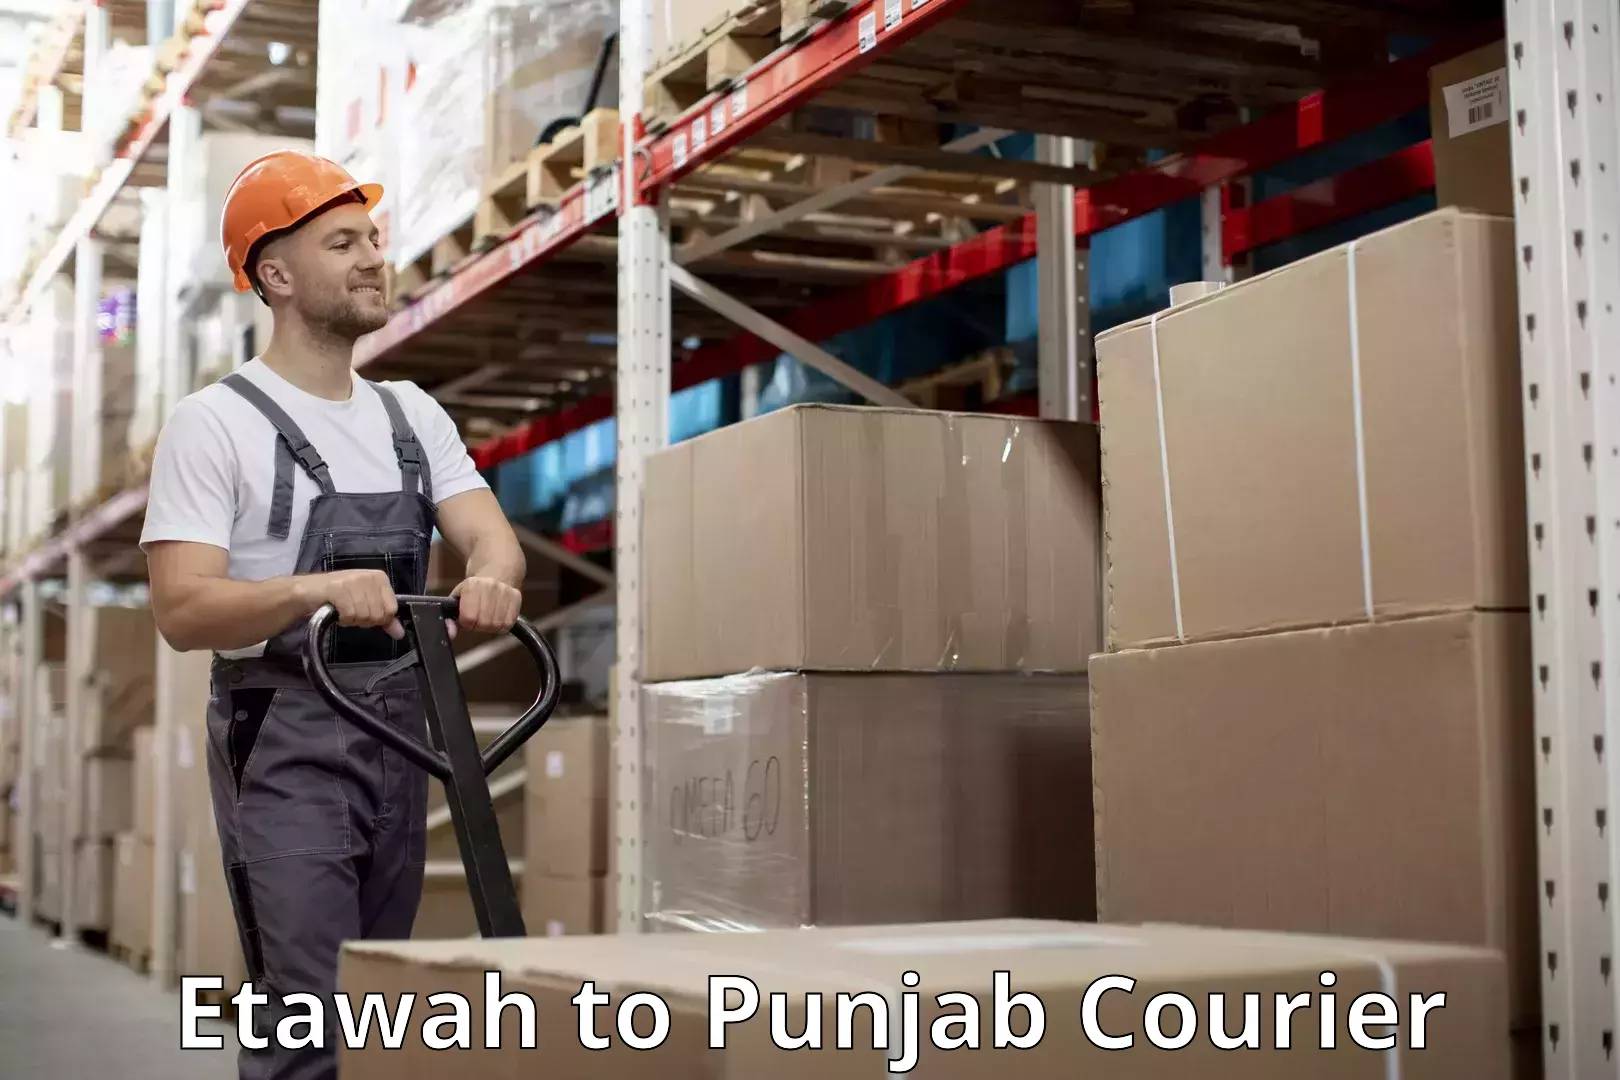 Luggage dispatch service Etawah to Punjab